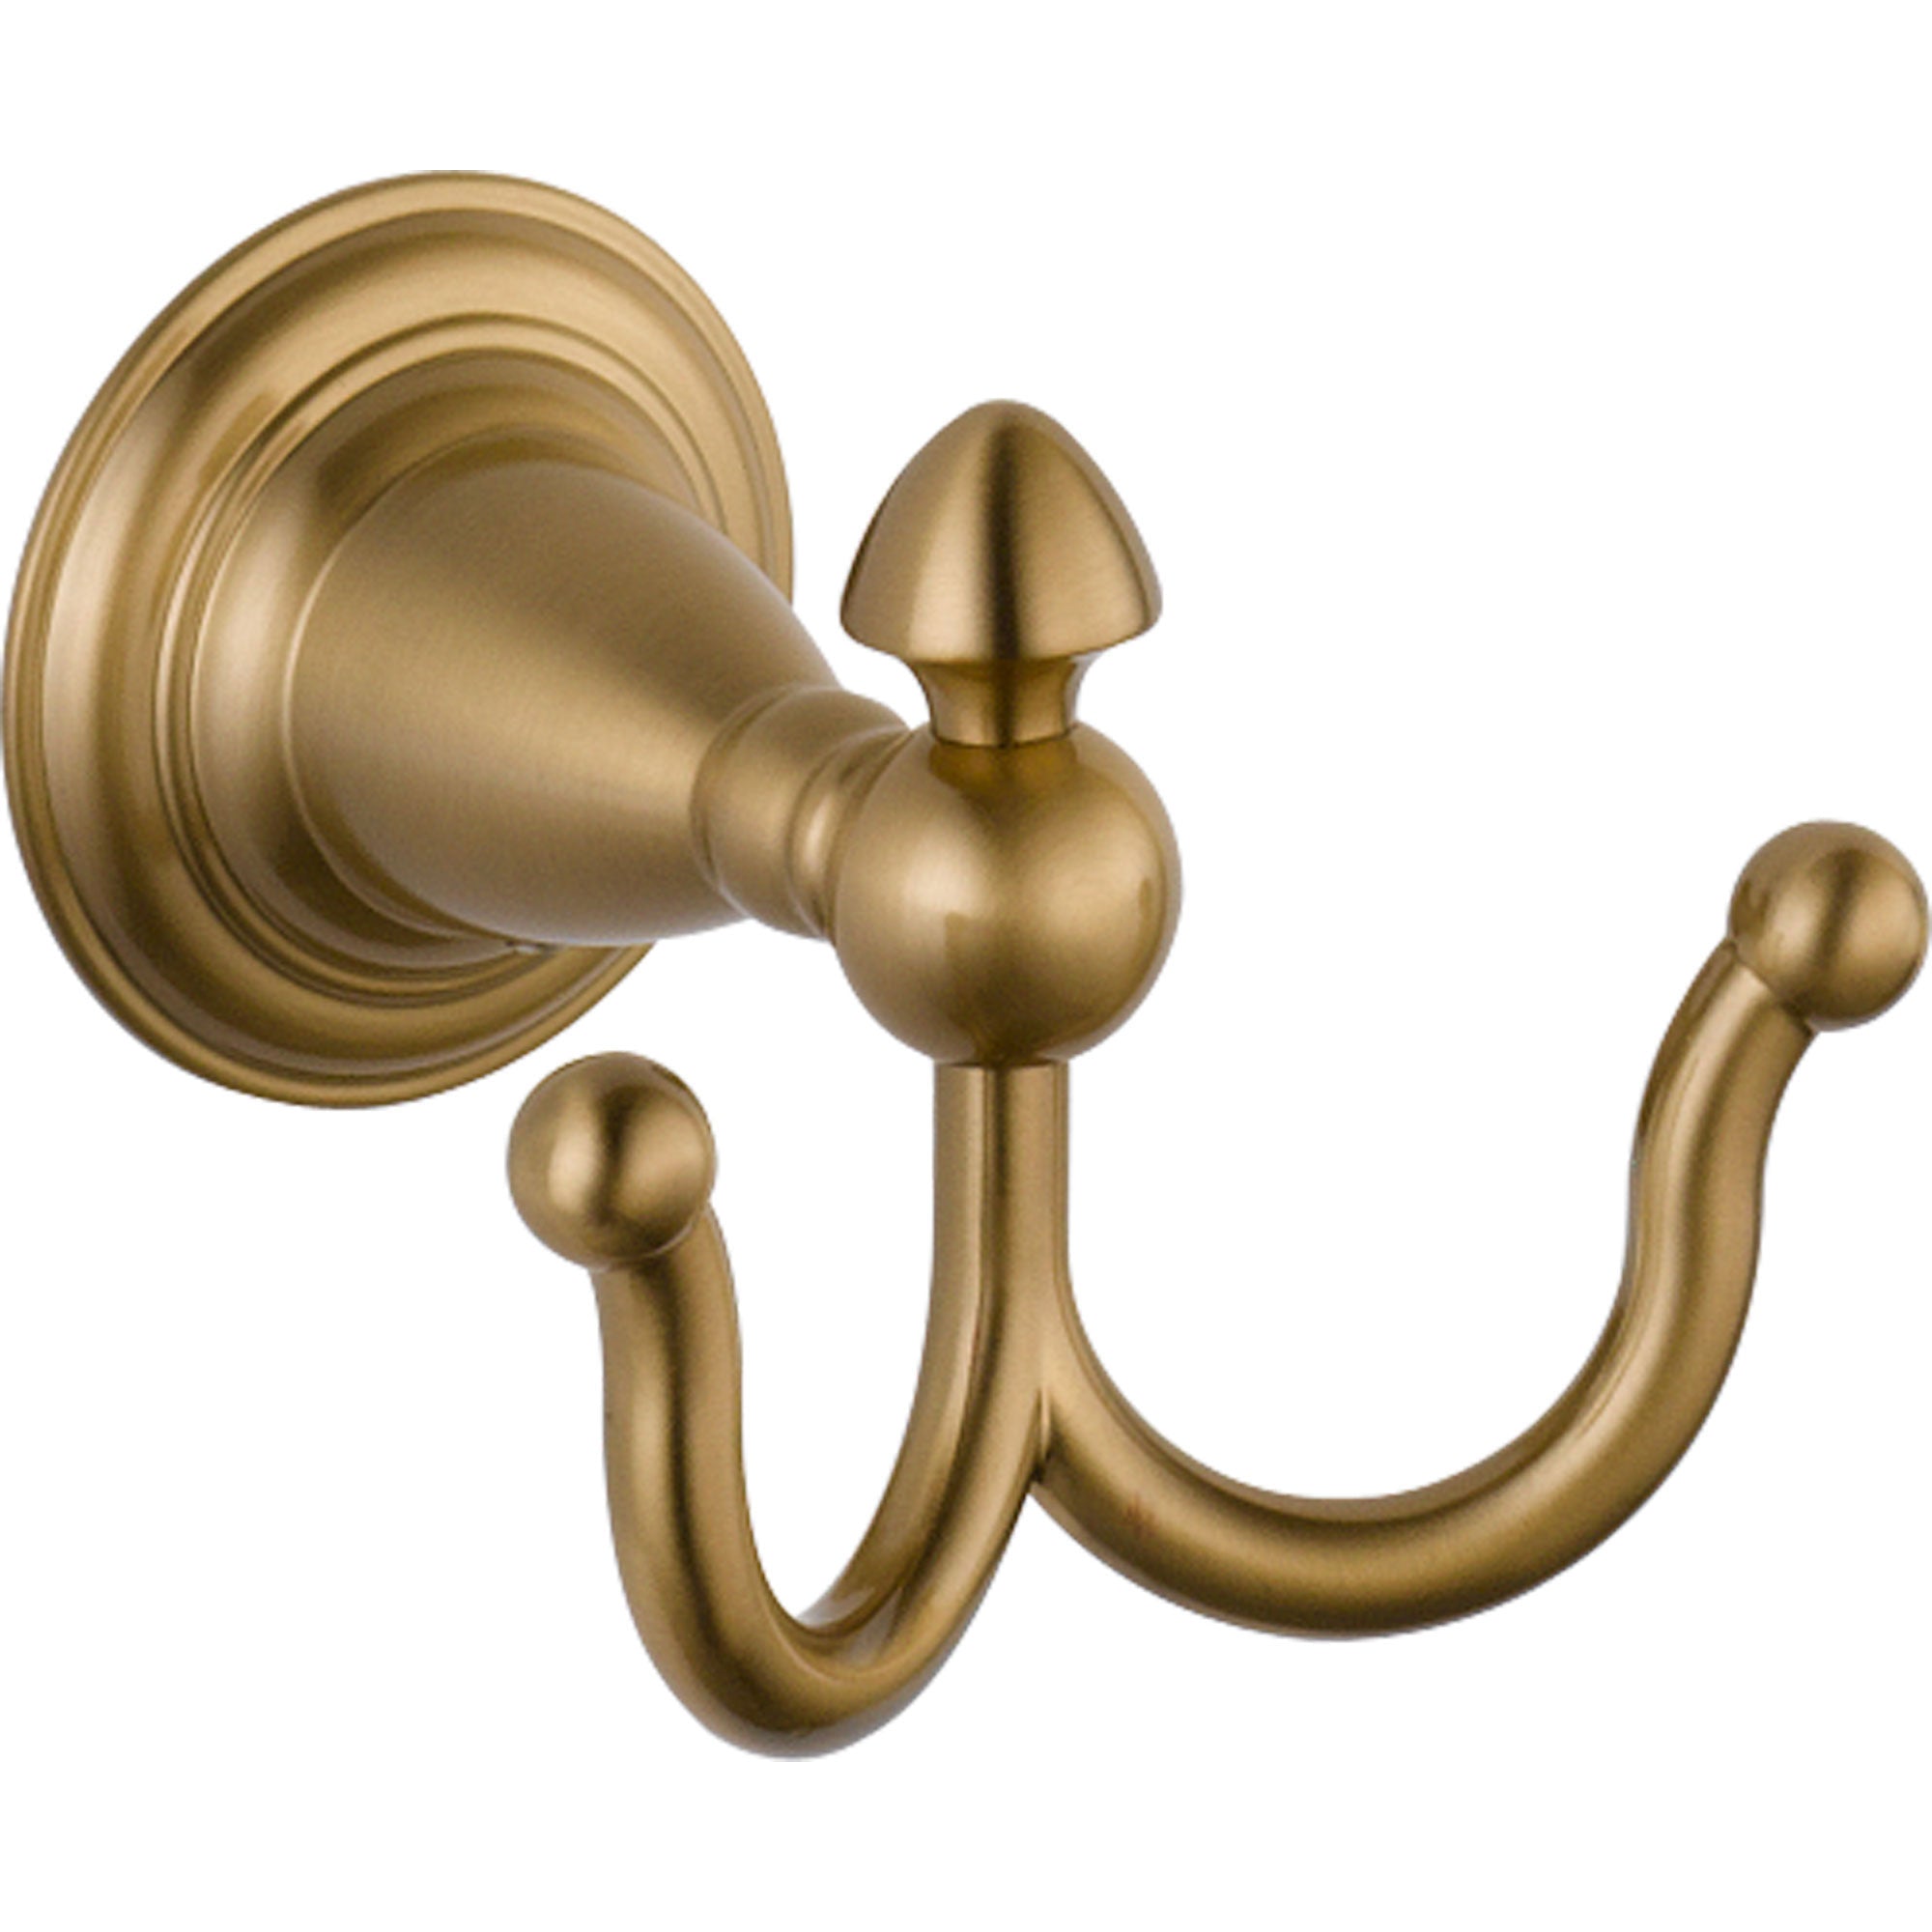 Delta Victorian Champage Bronze BASICS Bathroom Accessory Set Includes 